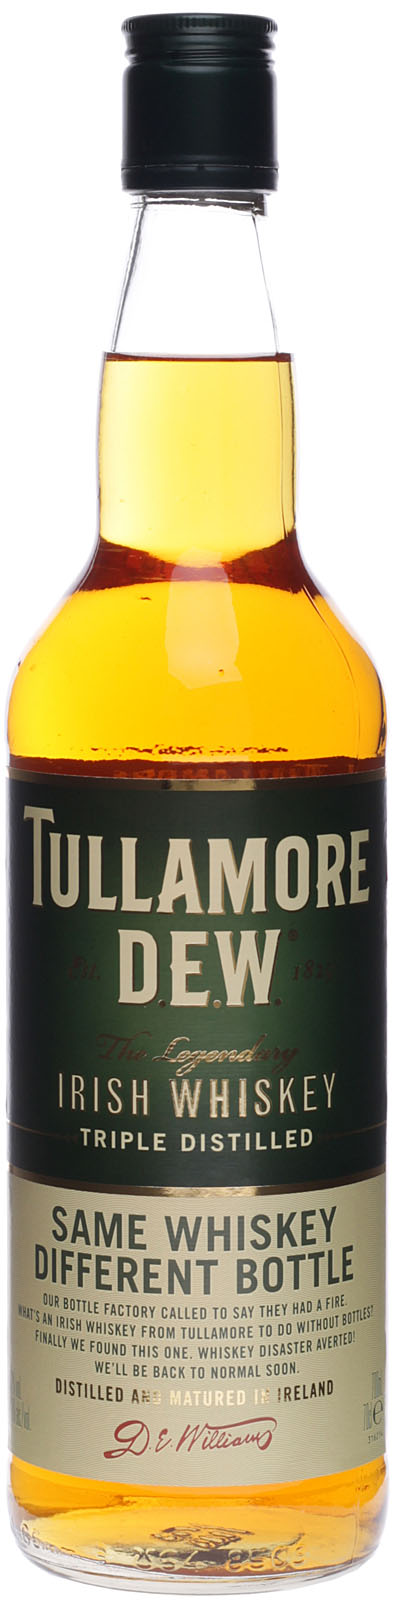 Tullamore Irish Whiskey kaufen günstig Dew online